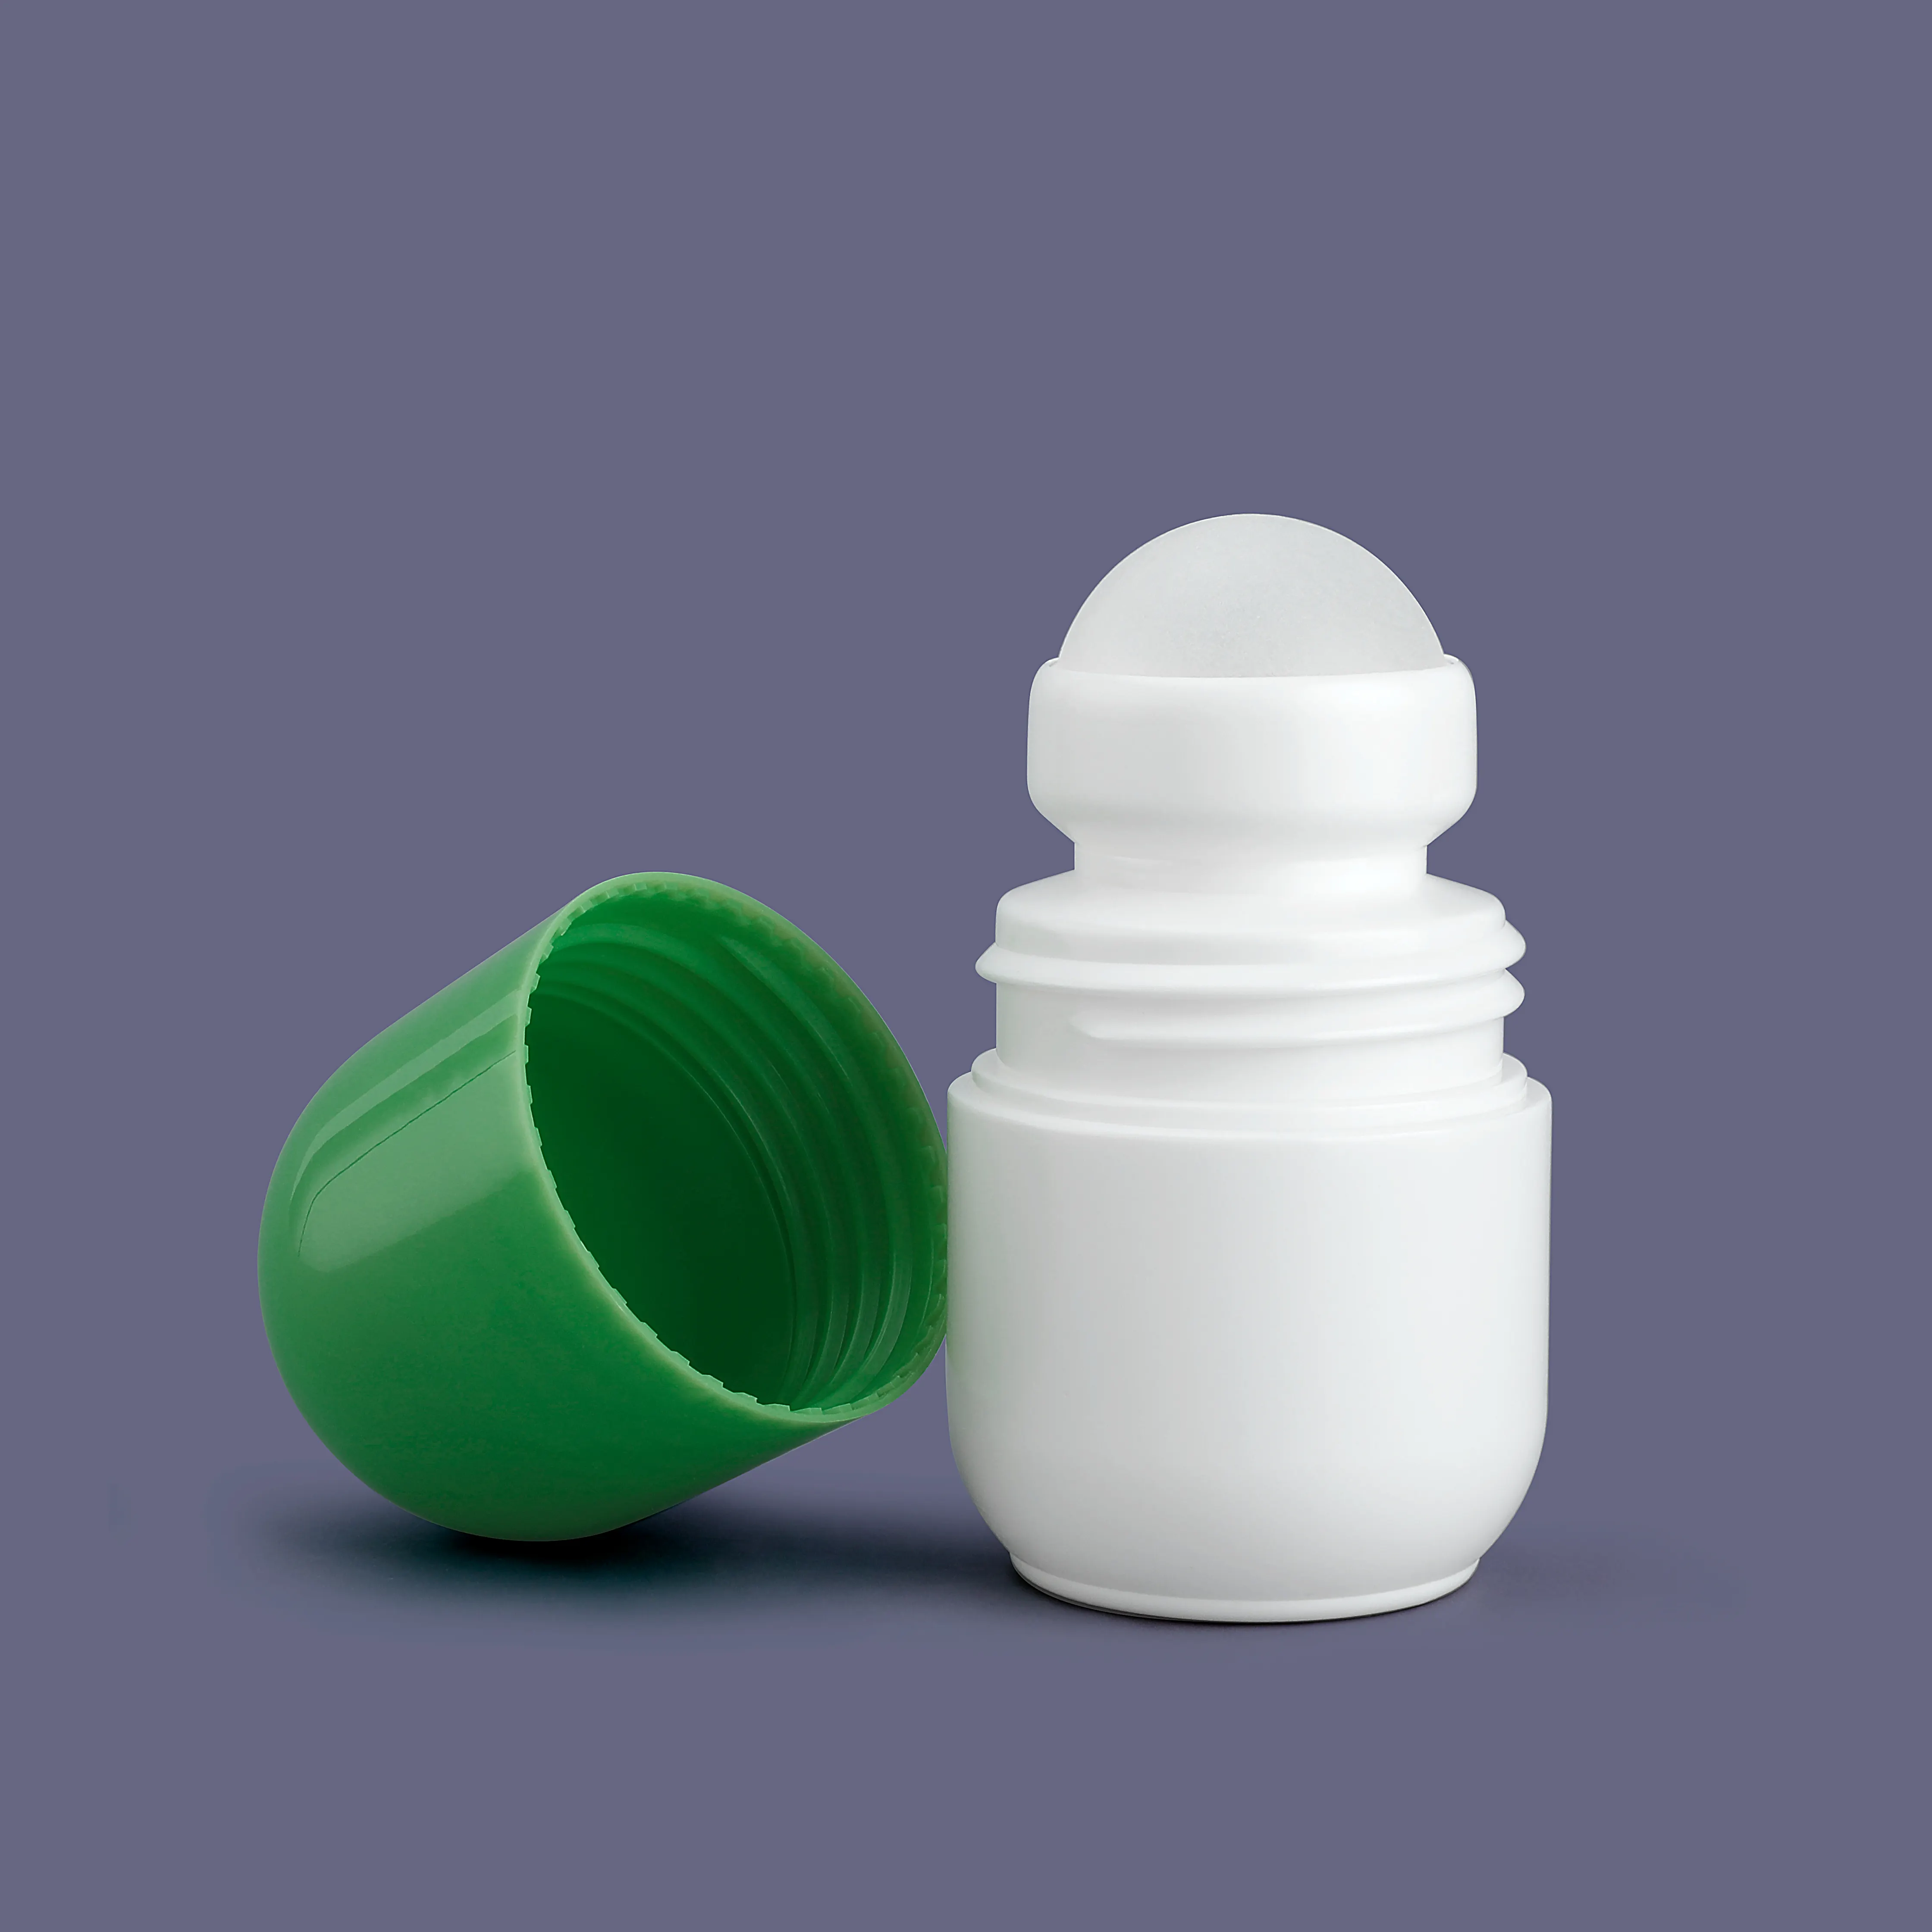 Botella aplicadora de bola enrollable directa de fábrica, botella de vidrio enrollable de 30 ml, contenedores de desodorante, botellas enrollables para mascotas